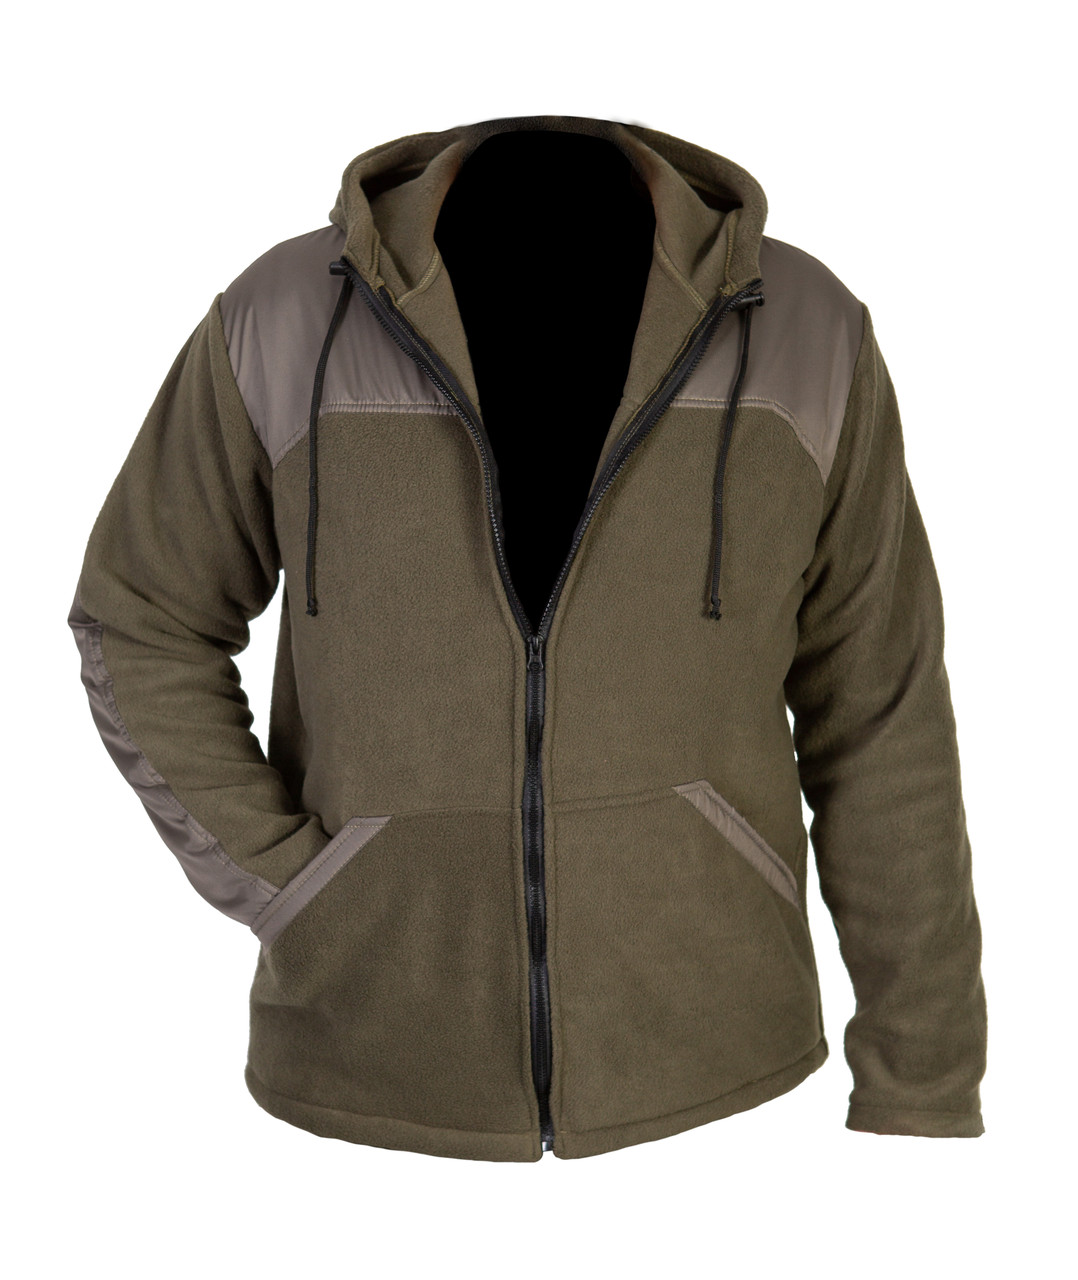 Куртка из флиса на молнии, размер S, цвет олива